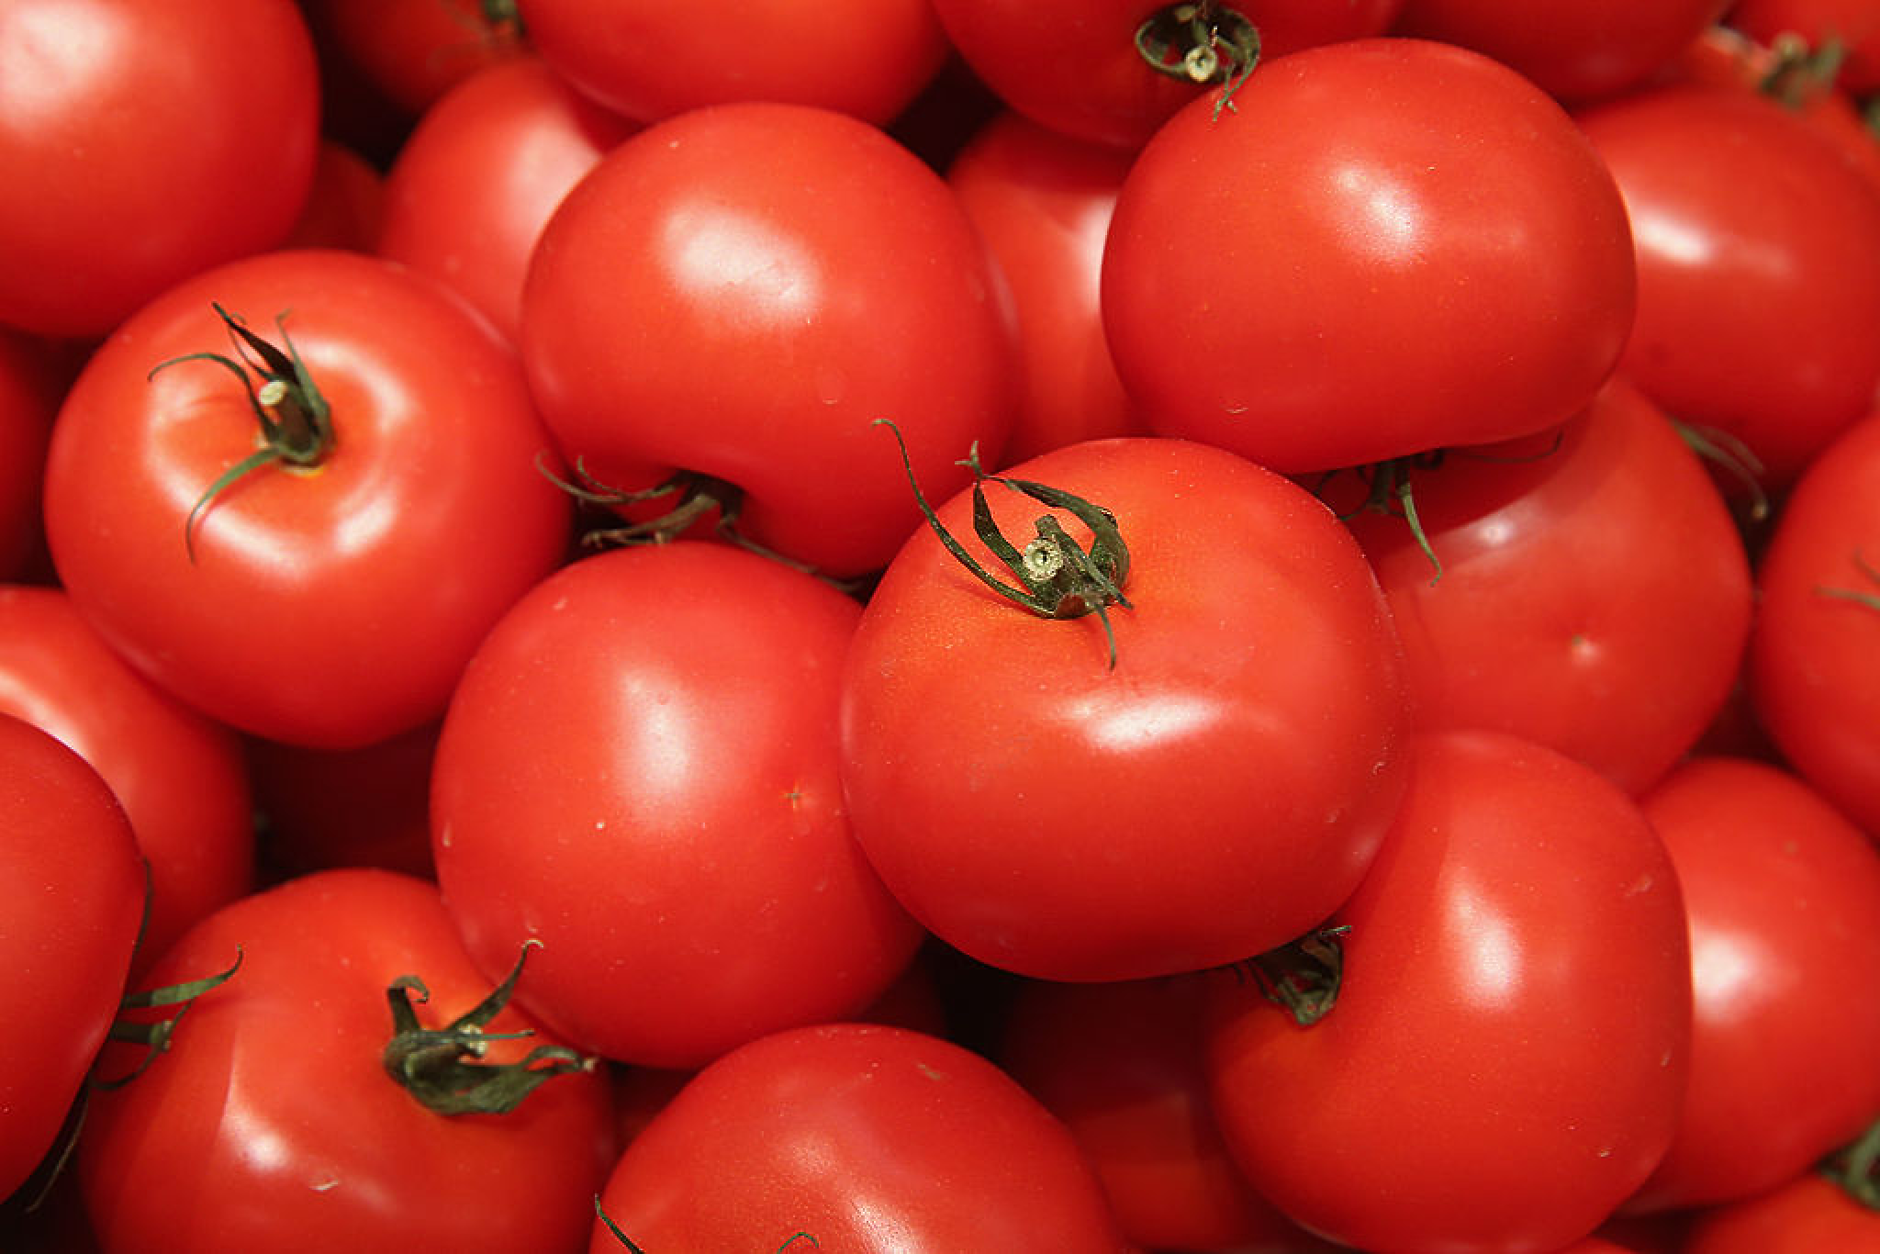 Шефът на комисията по стоковите борси: Цената на килограм домати на дребно може да стигне до 7 лева